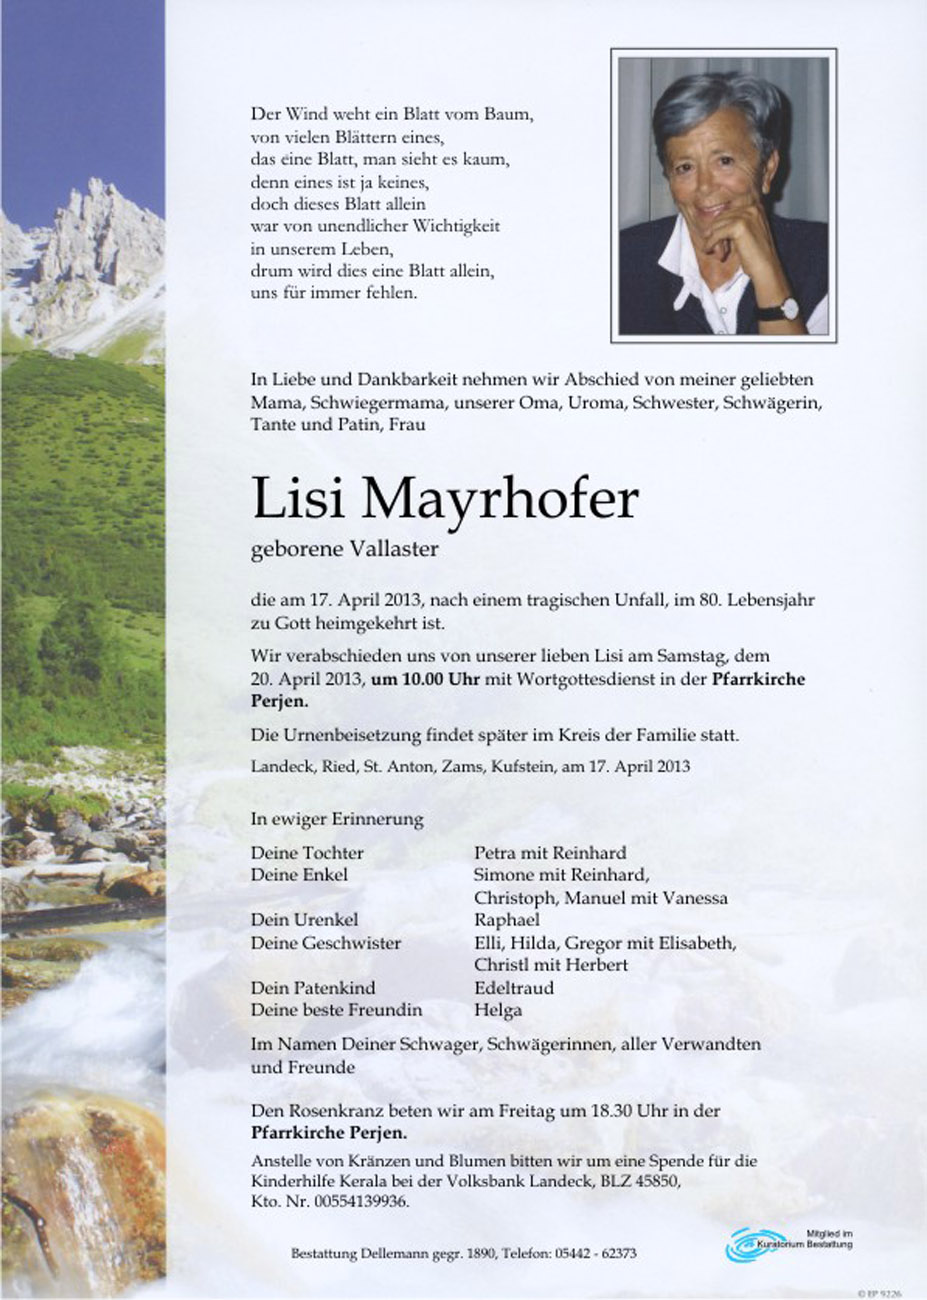   Lisi Mayrhofer